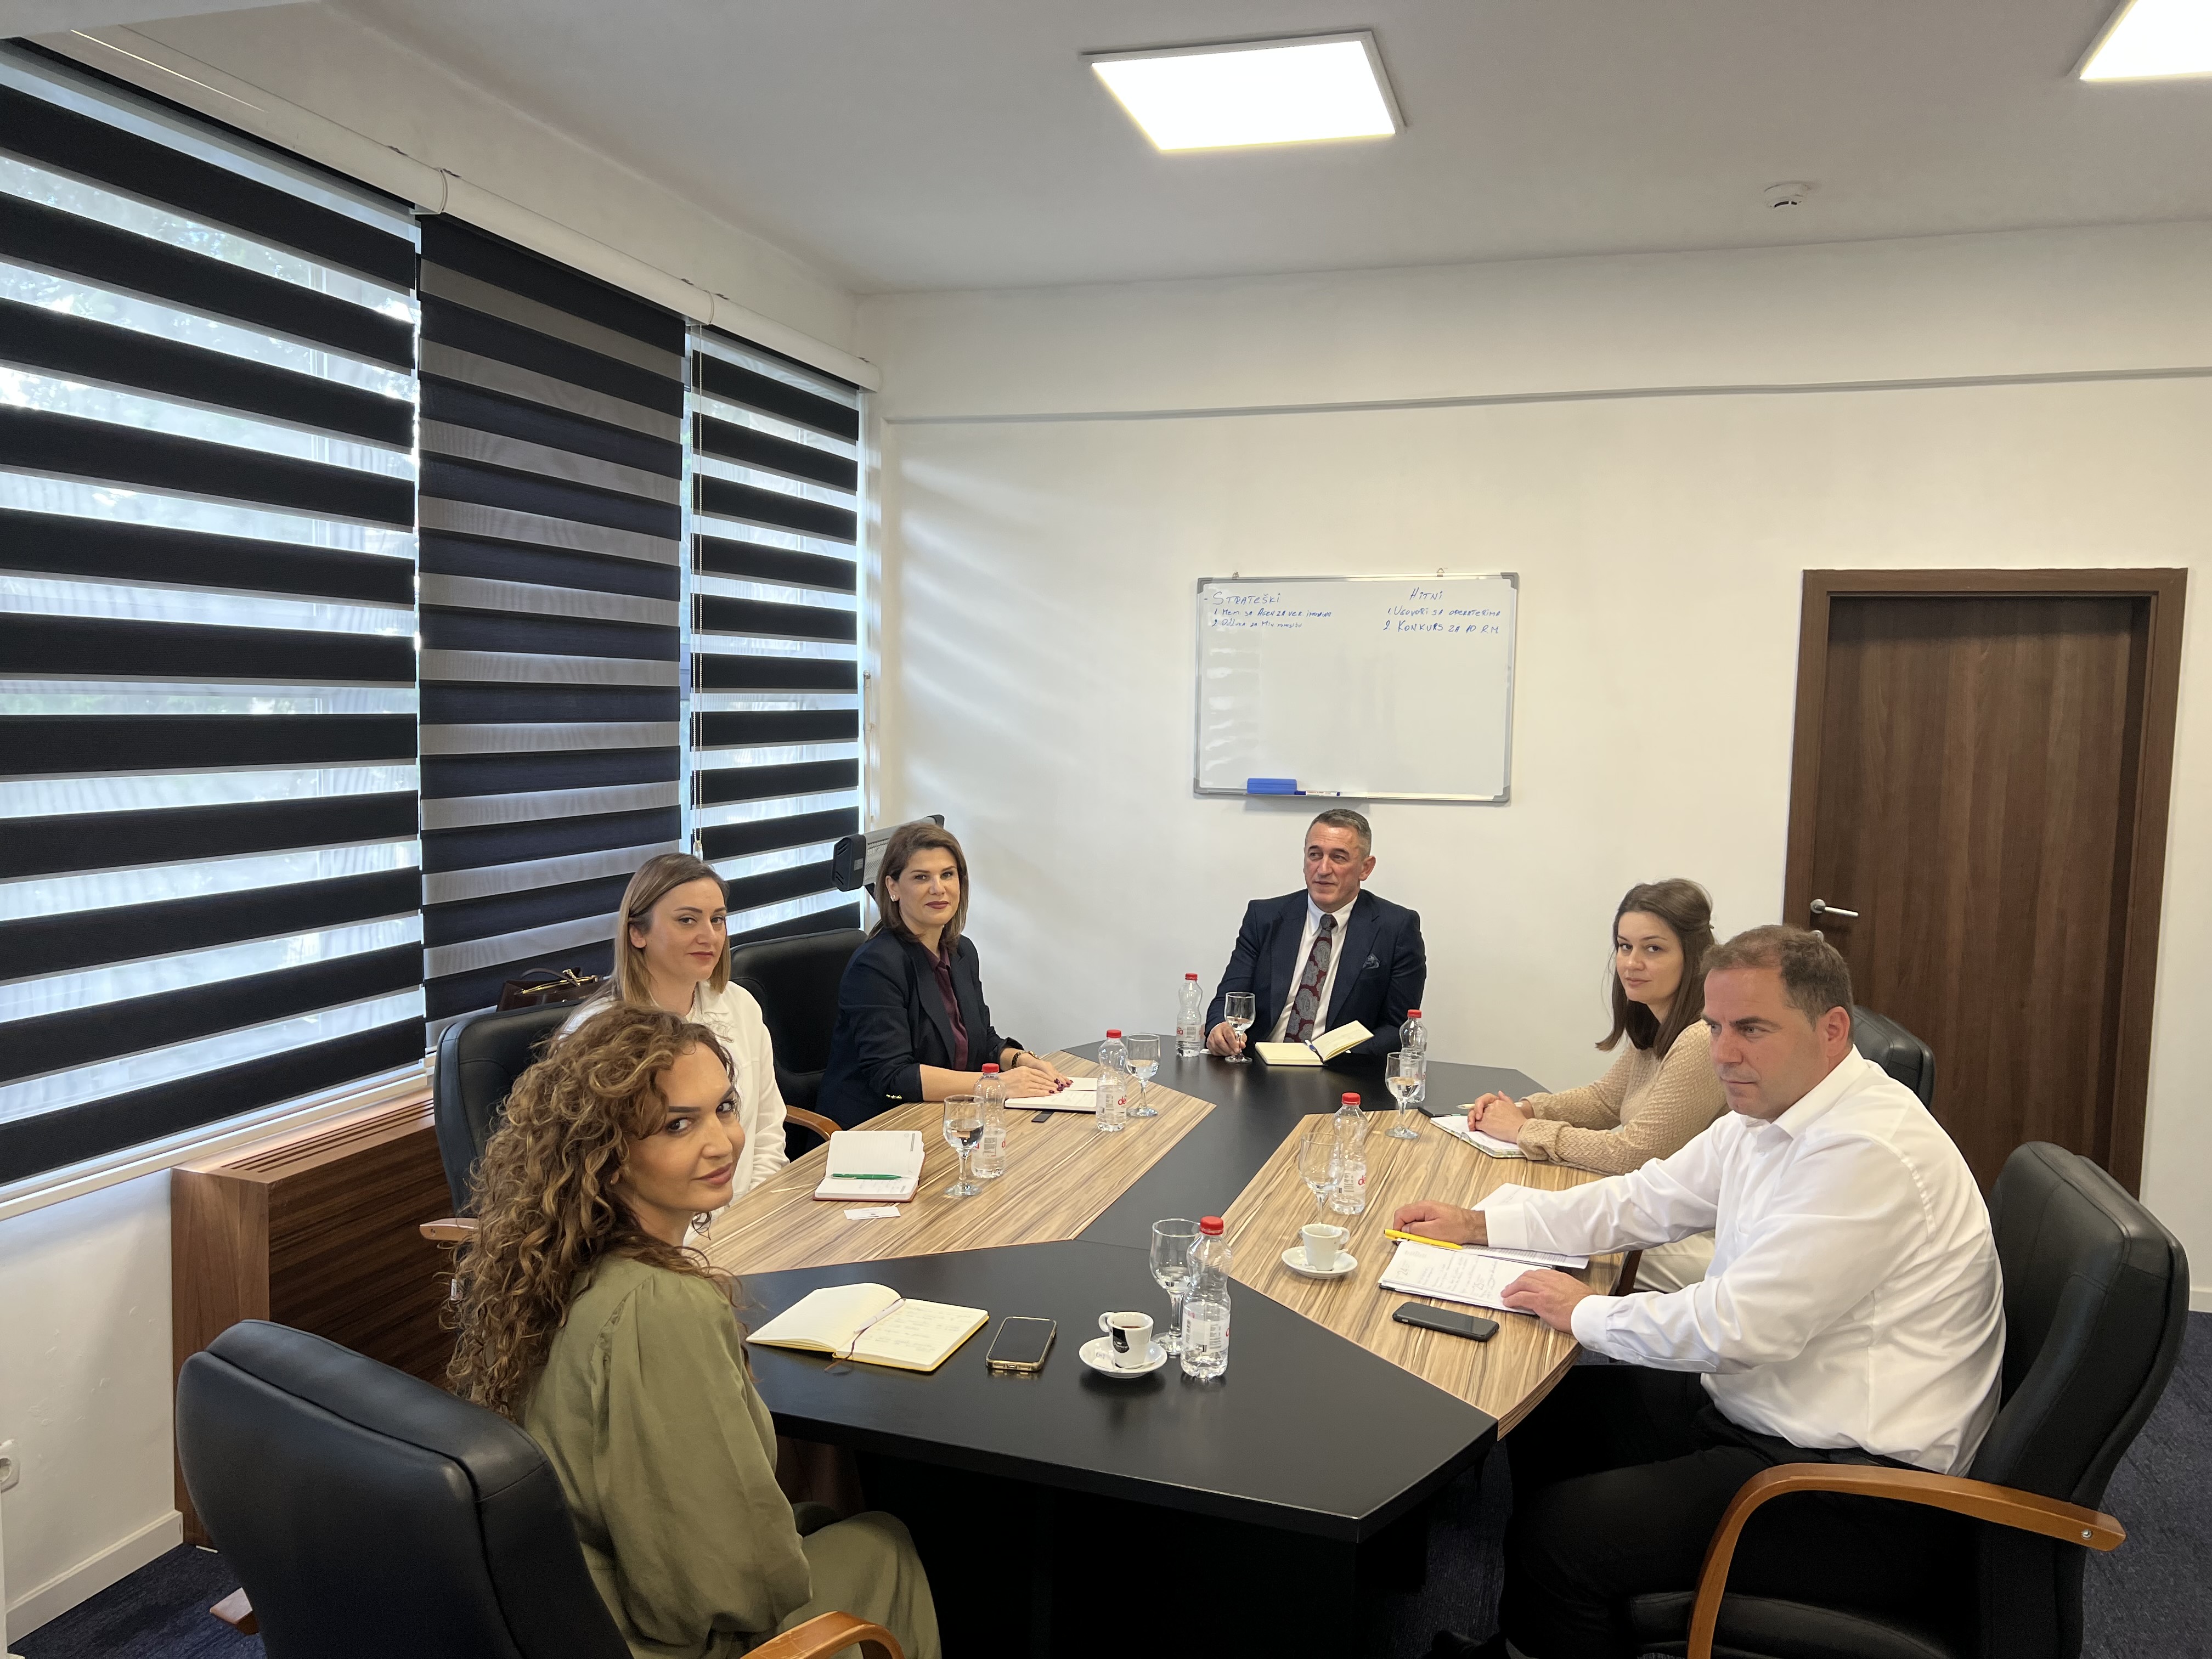 Është konfirmuar bashkëpunimi strategjik ndërmjet Ministrisë për Komunitete dhe Kthim dhe Agjencisë Kosovare për Krahasim dhe Verifikim të Pronës.